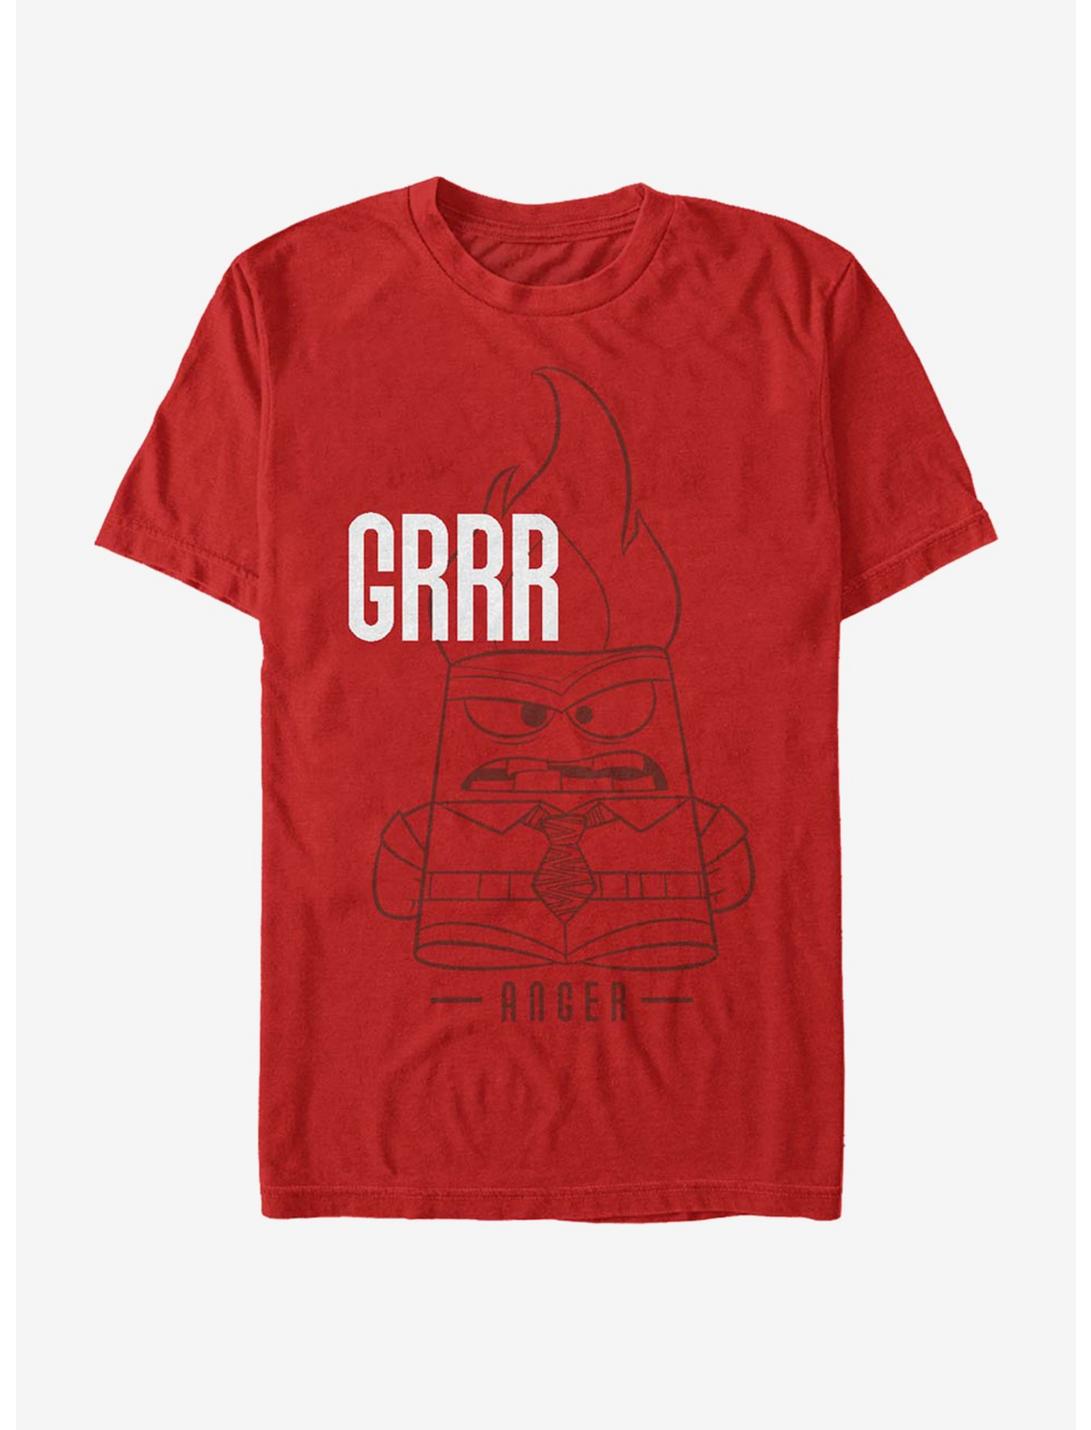 Disney Pixar Inside Out Grrr Anger T-Shirt, RED, hi-res